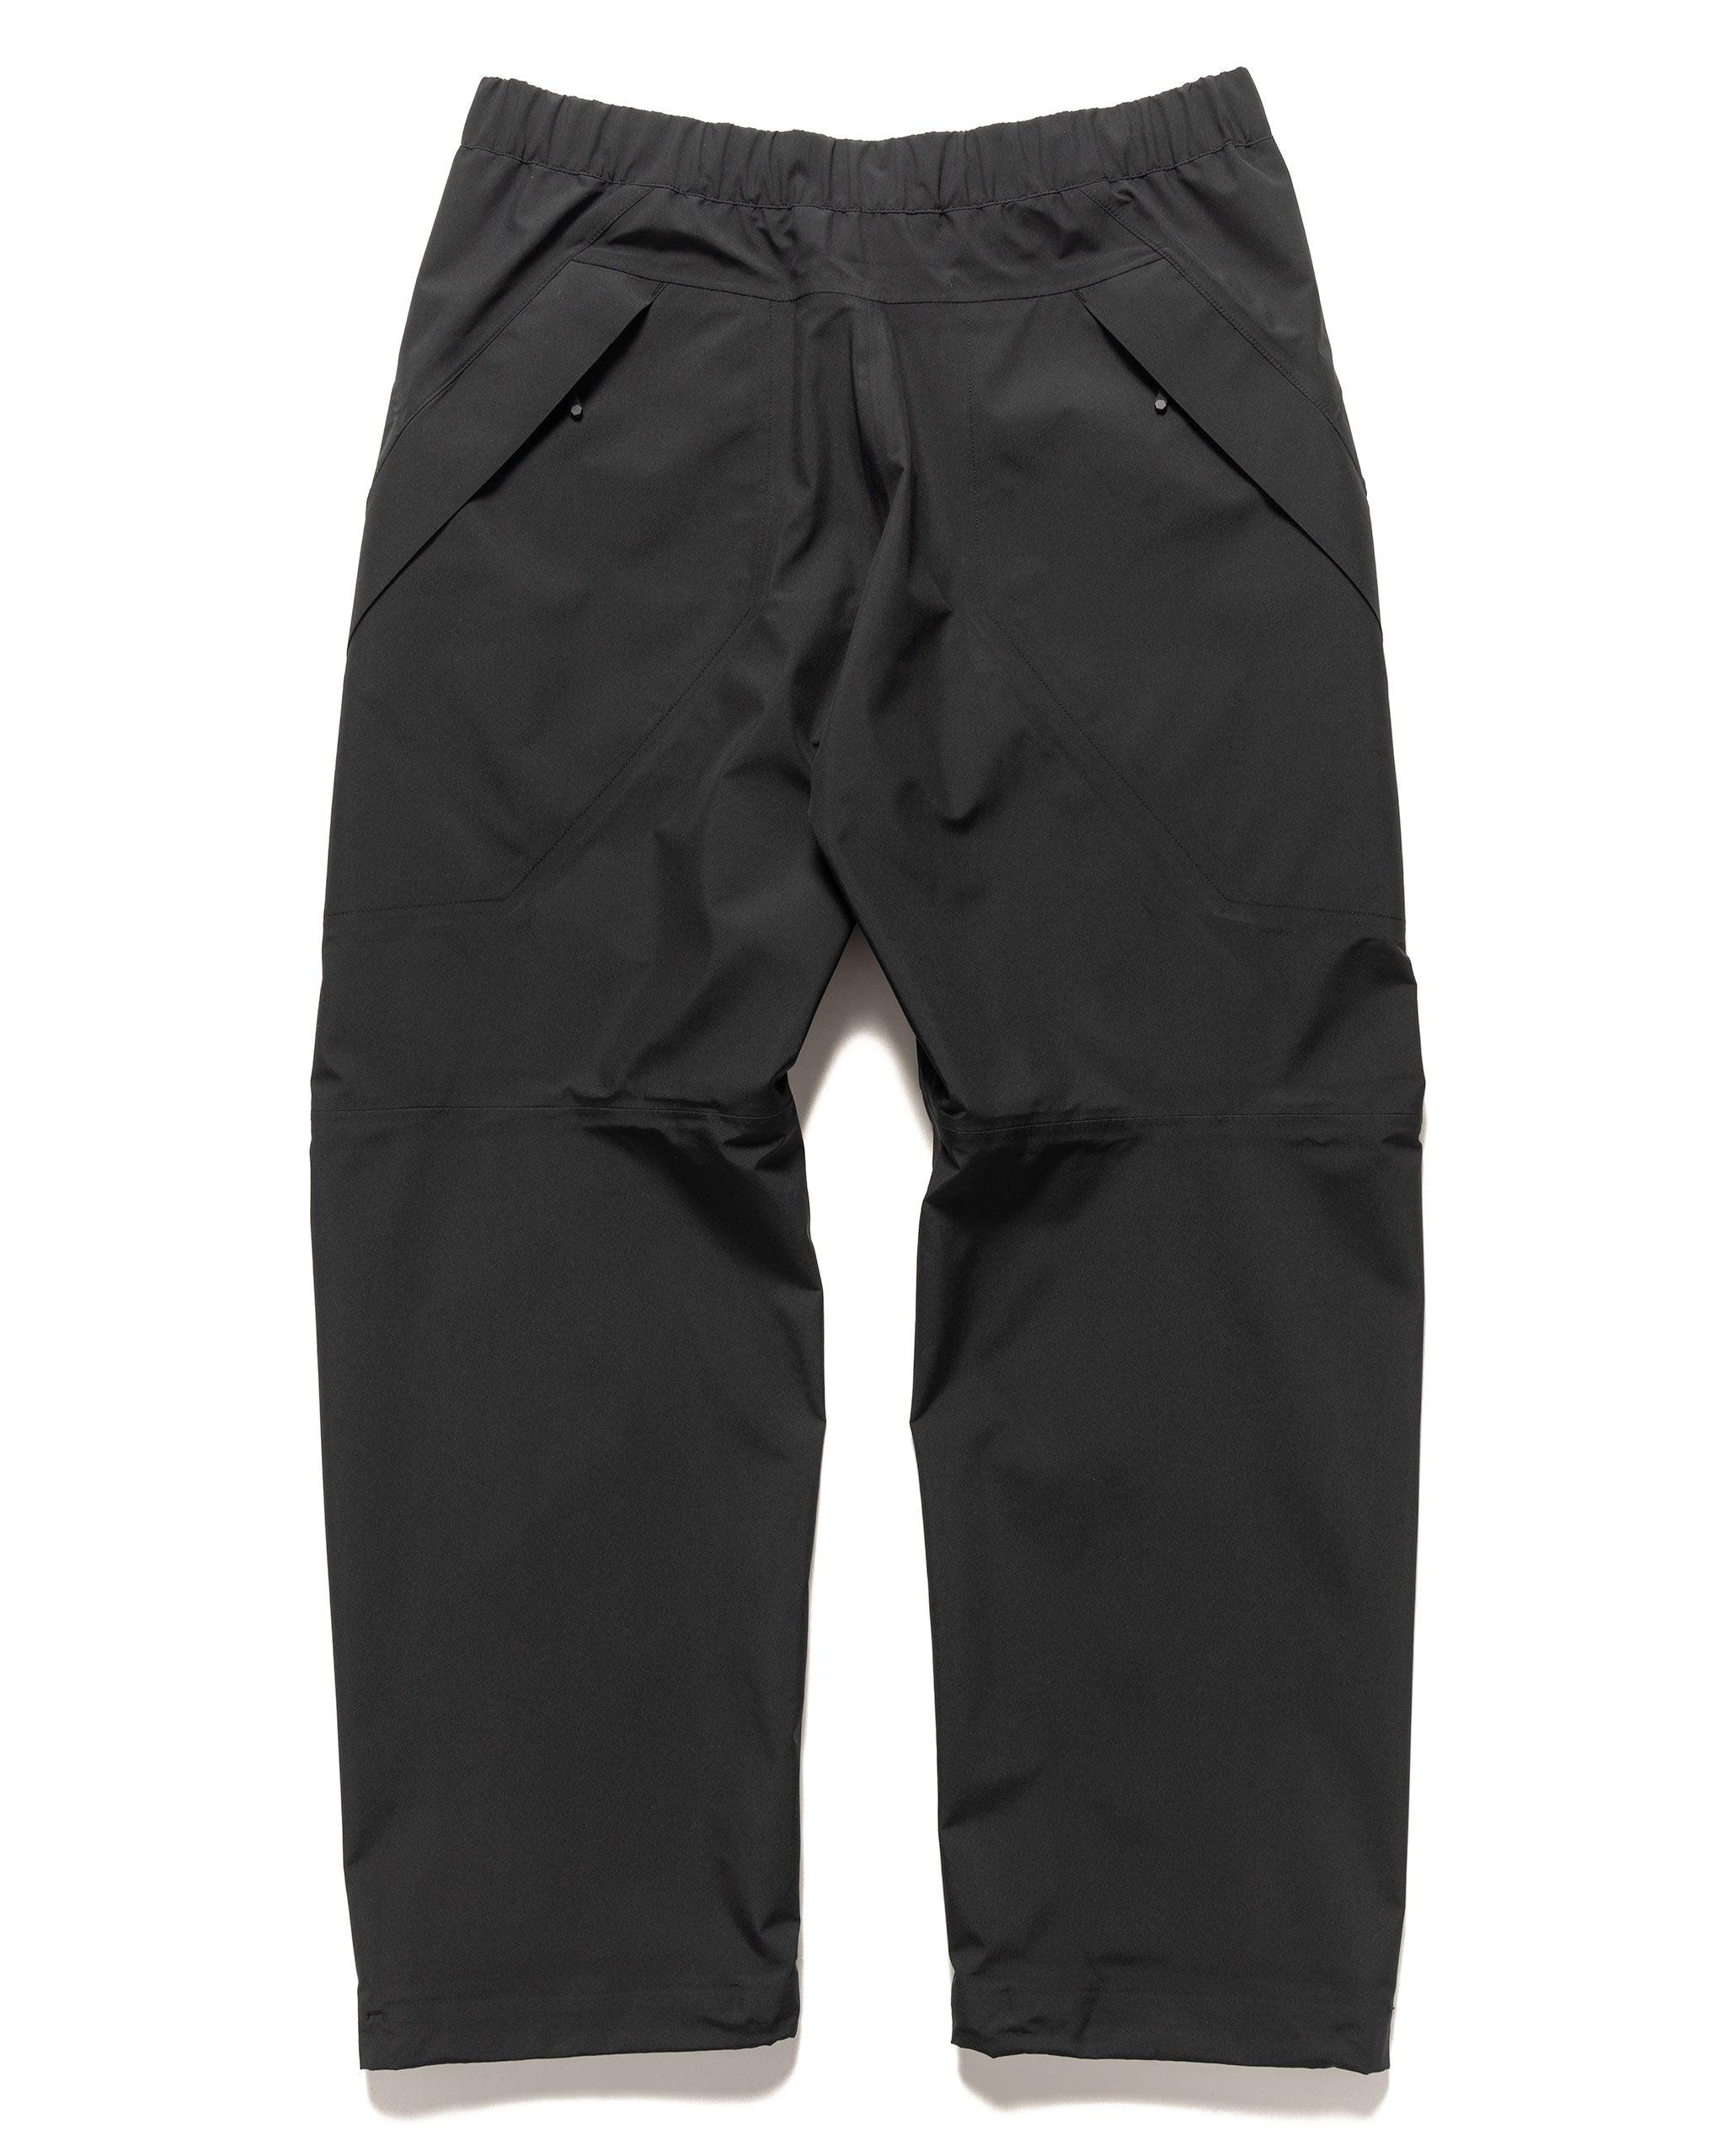 HAVEN Rove Packable Pant - GORE-TEX WINDSTOPPER® 3L Tricot Black